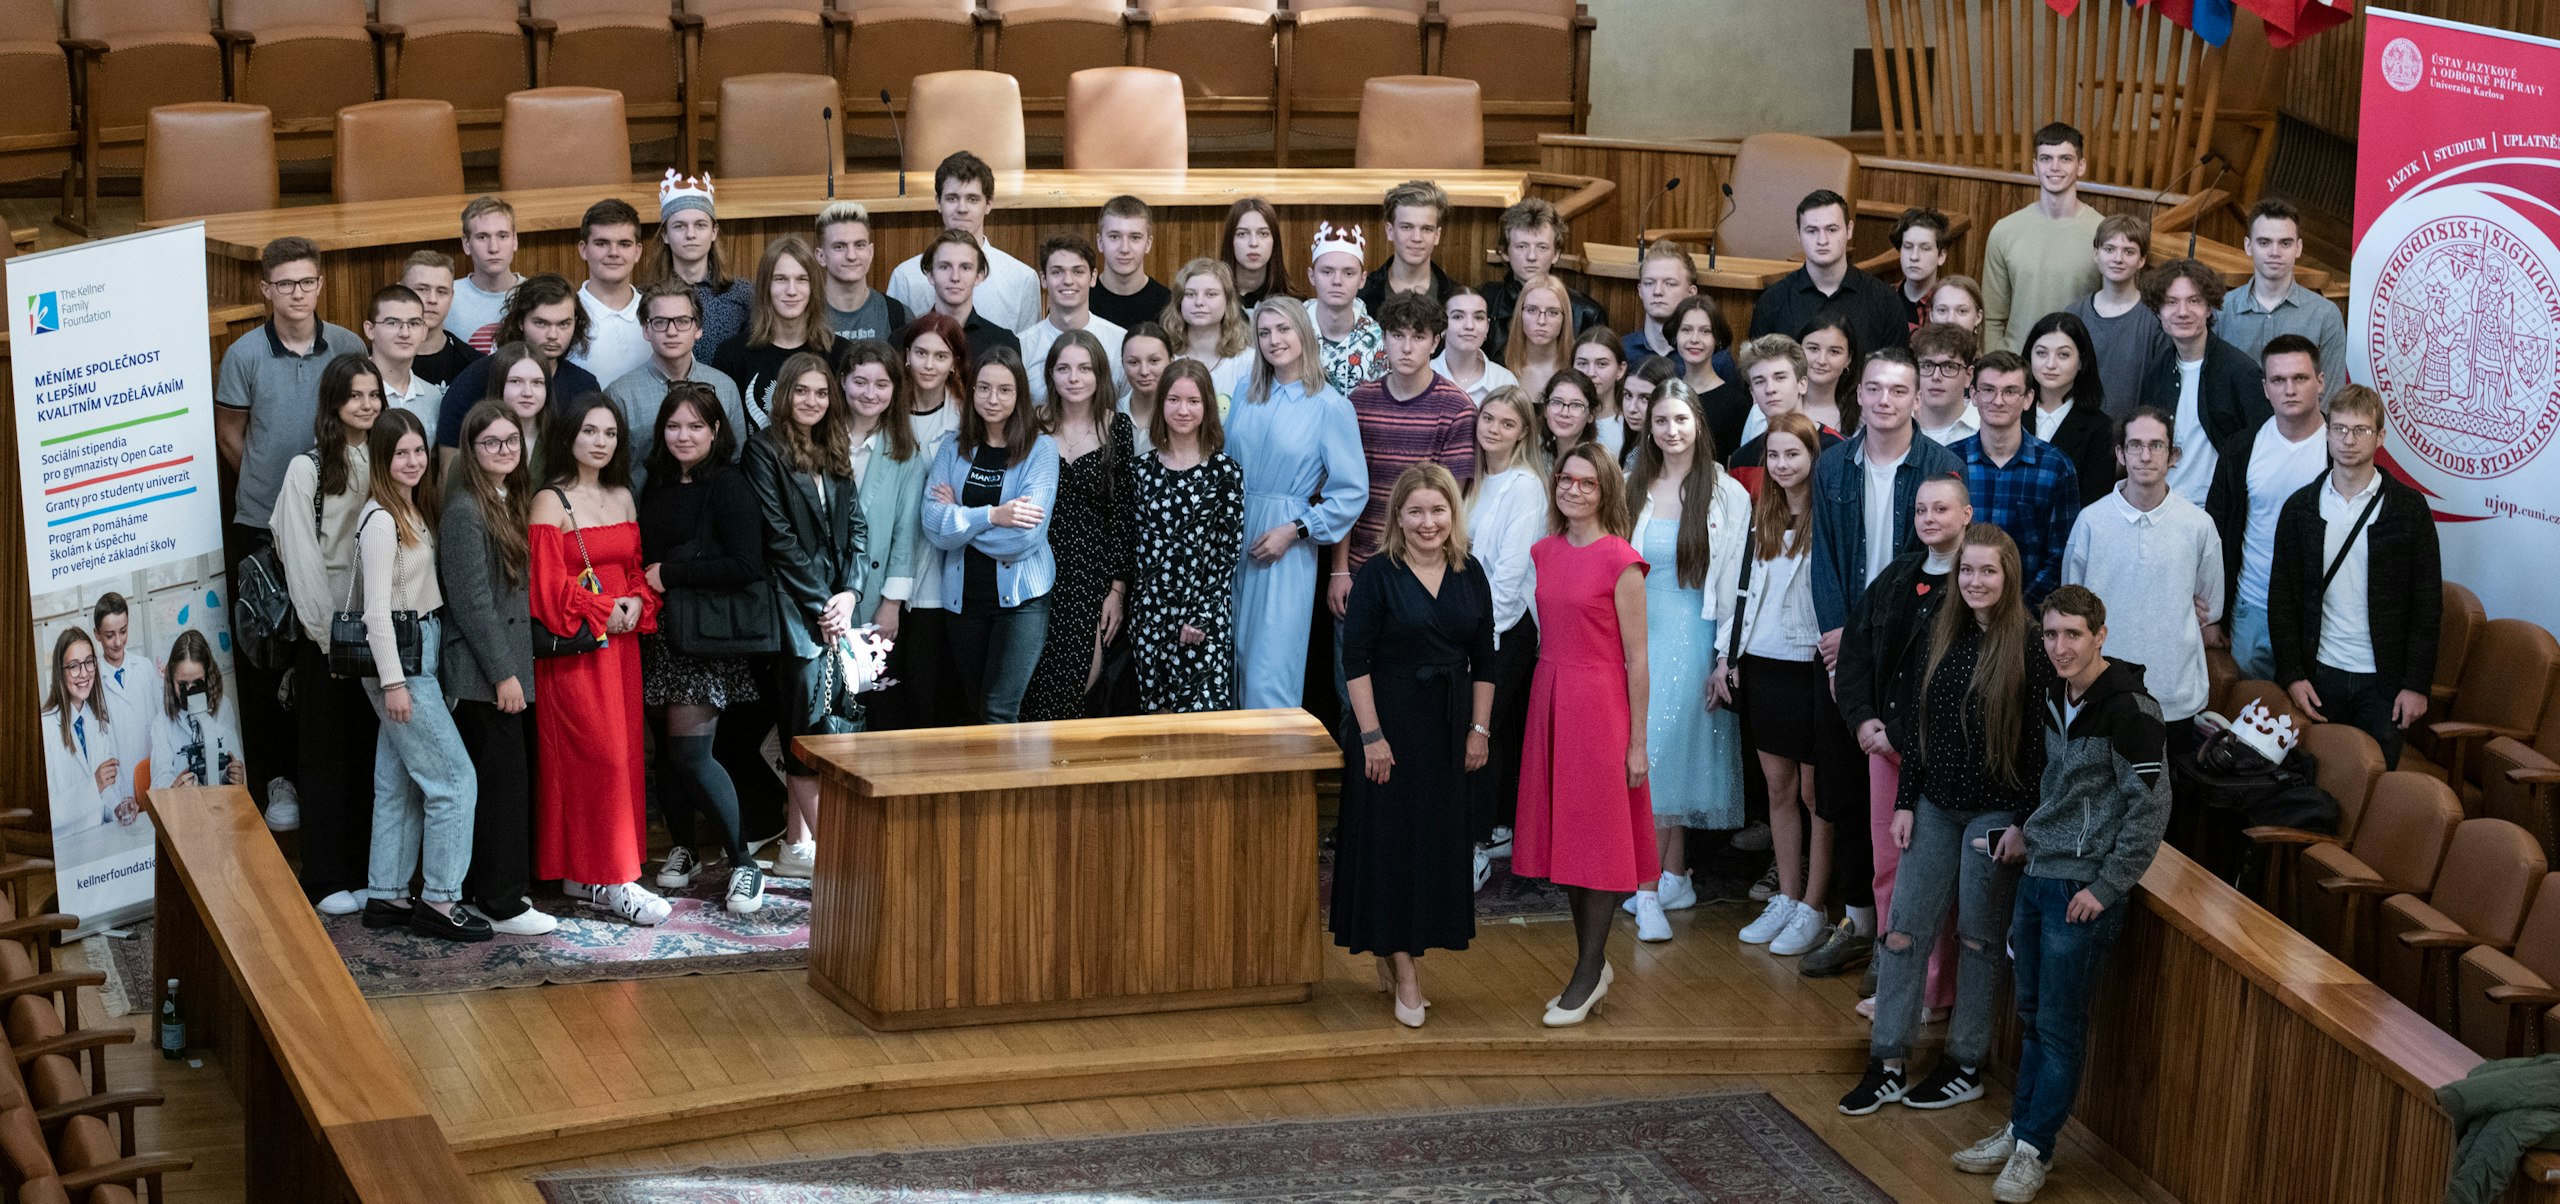 ÚJOP UK, 75 ukrajinských studentů